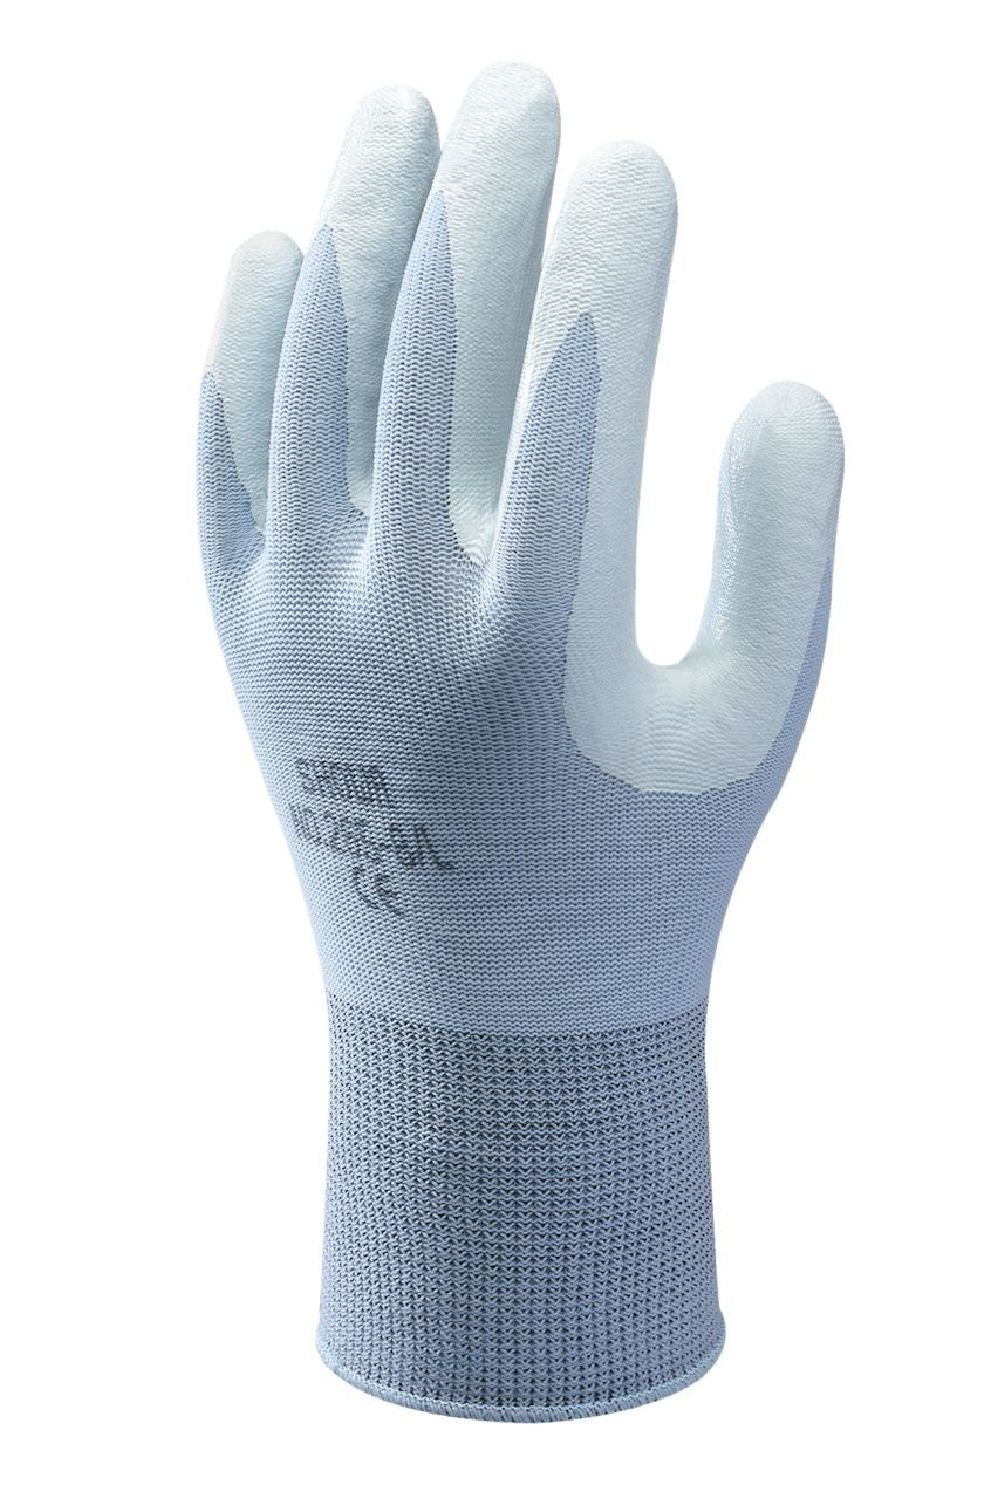 Handschuhe SHOWA 265 hellblau ergonomisch und nahtlos